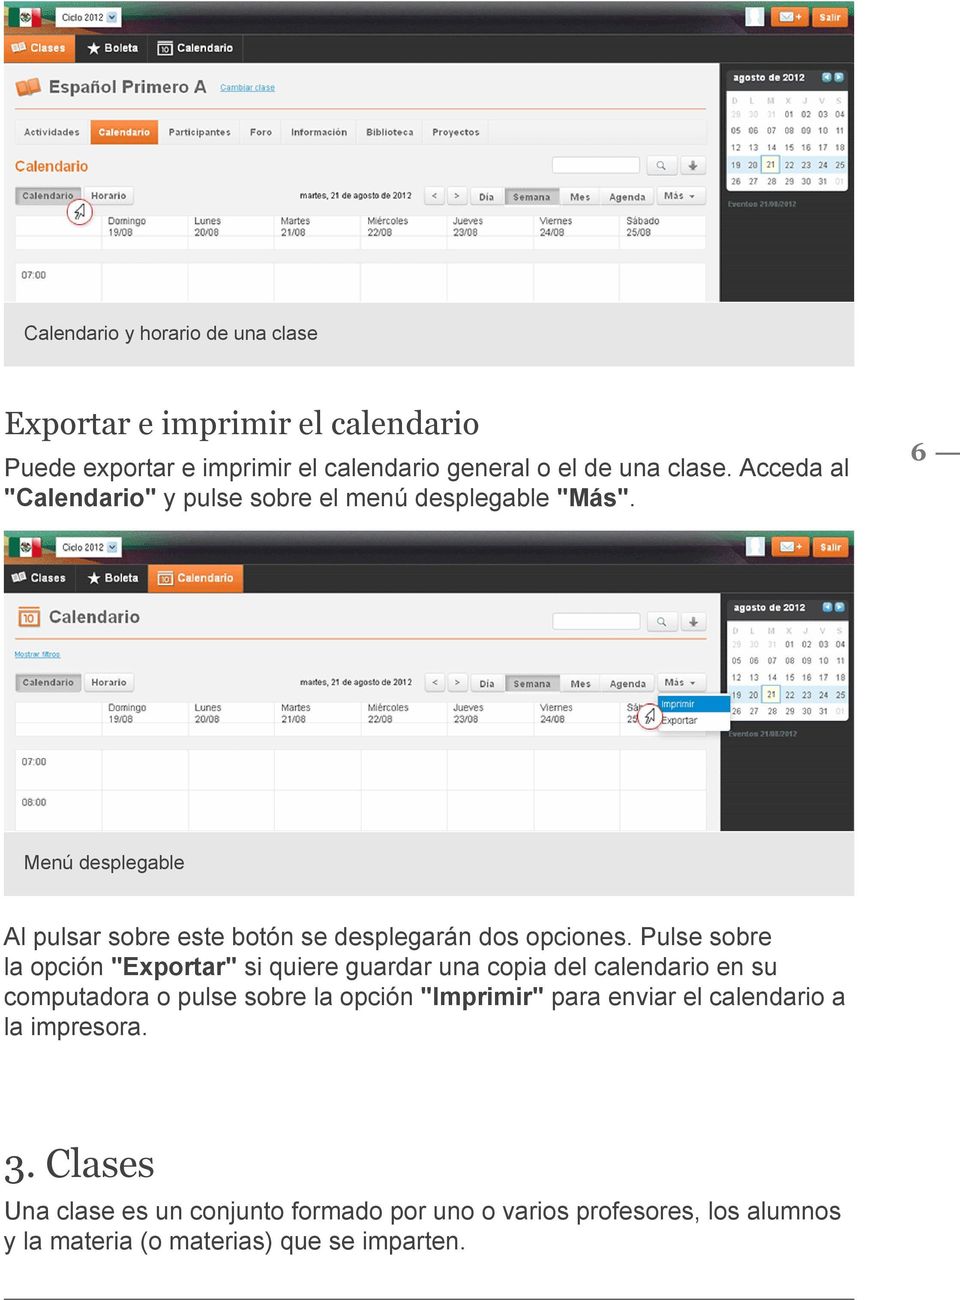 Pulse sobre la opción "Exportar" si quiere guardar una copia del calendario en su computadora o pulse sobre la opción "Imprimir" para enviar